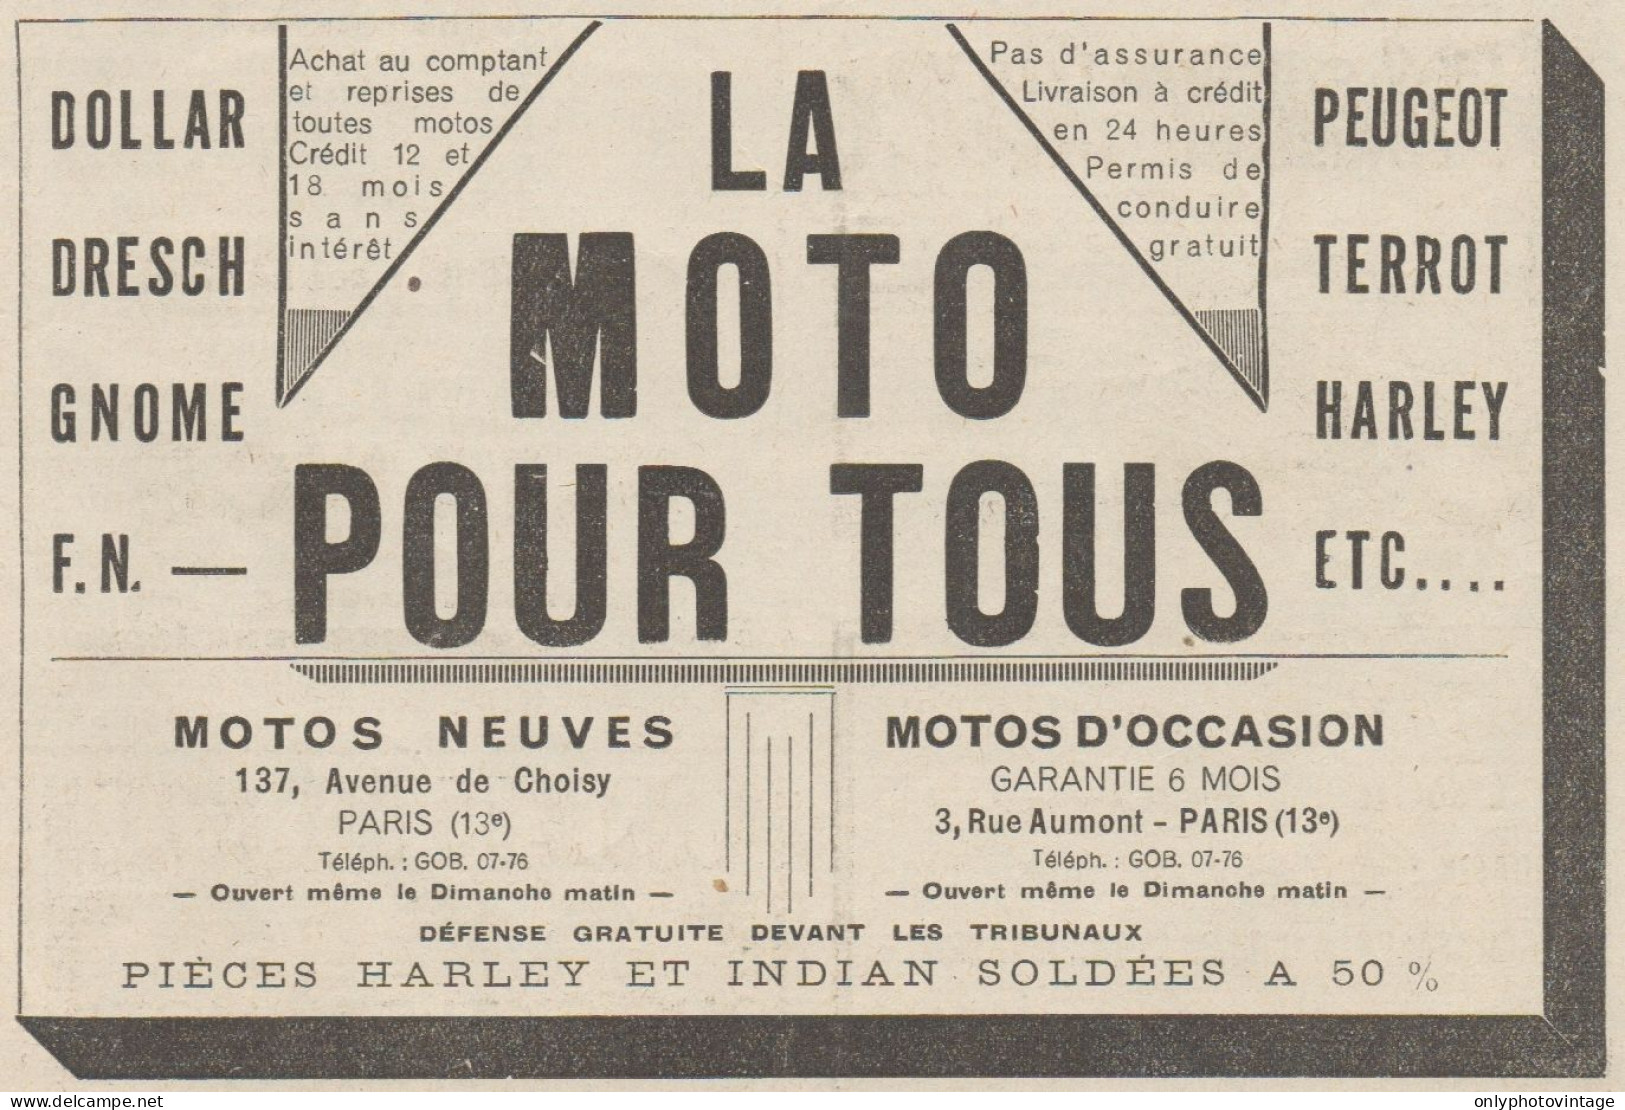 LA MOTO POUR TOUS - Dresch - Gnome - Pubblicità D'epoca - 1931 Old Advert - Publicités